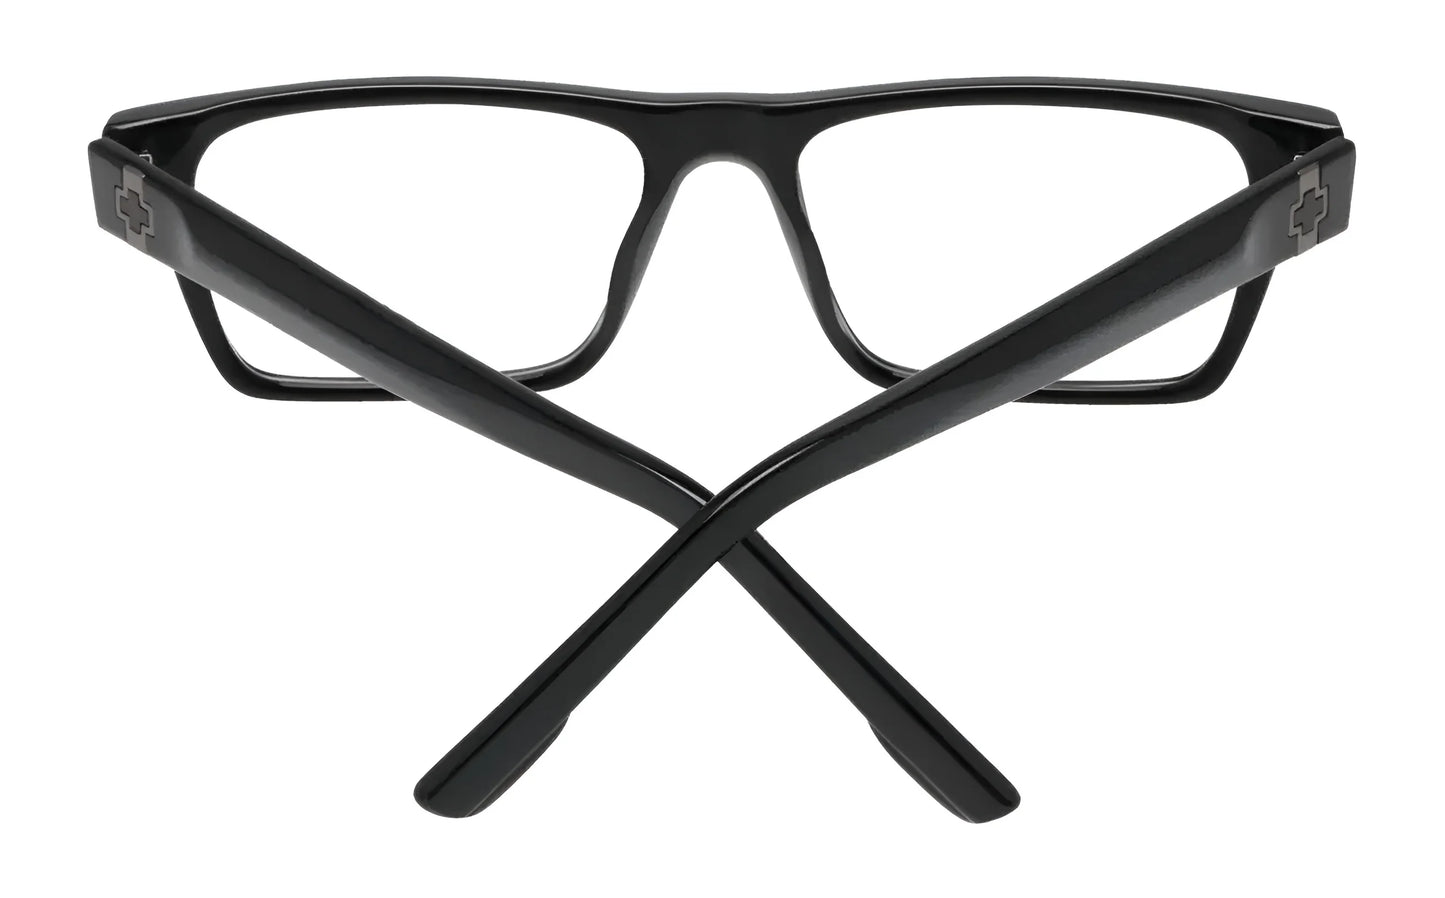 SPY DRAKE Eyeglasses | Size 54